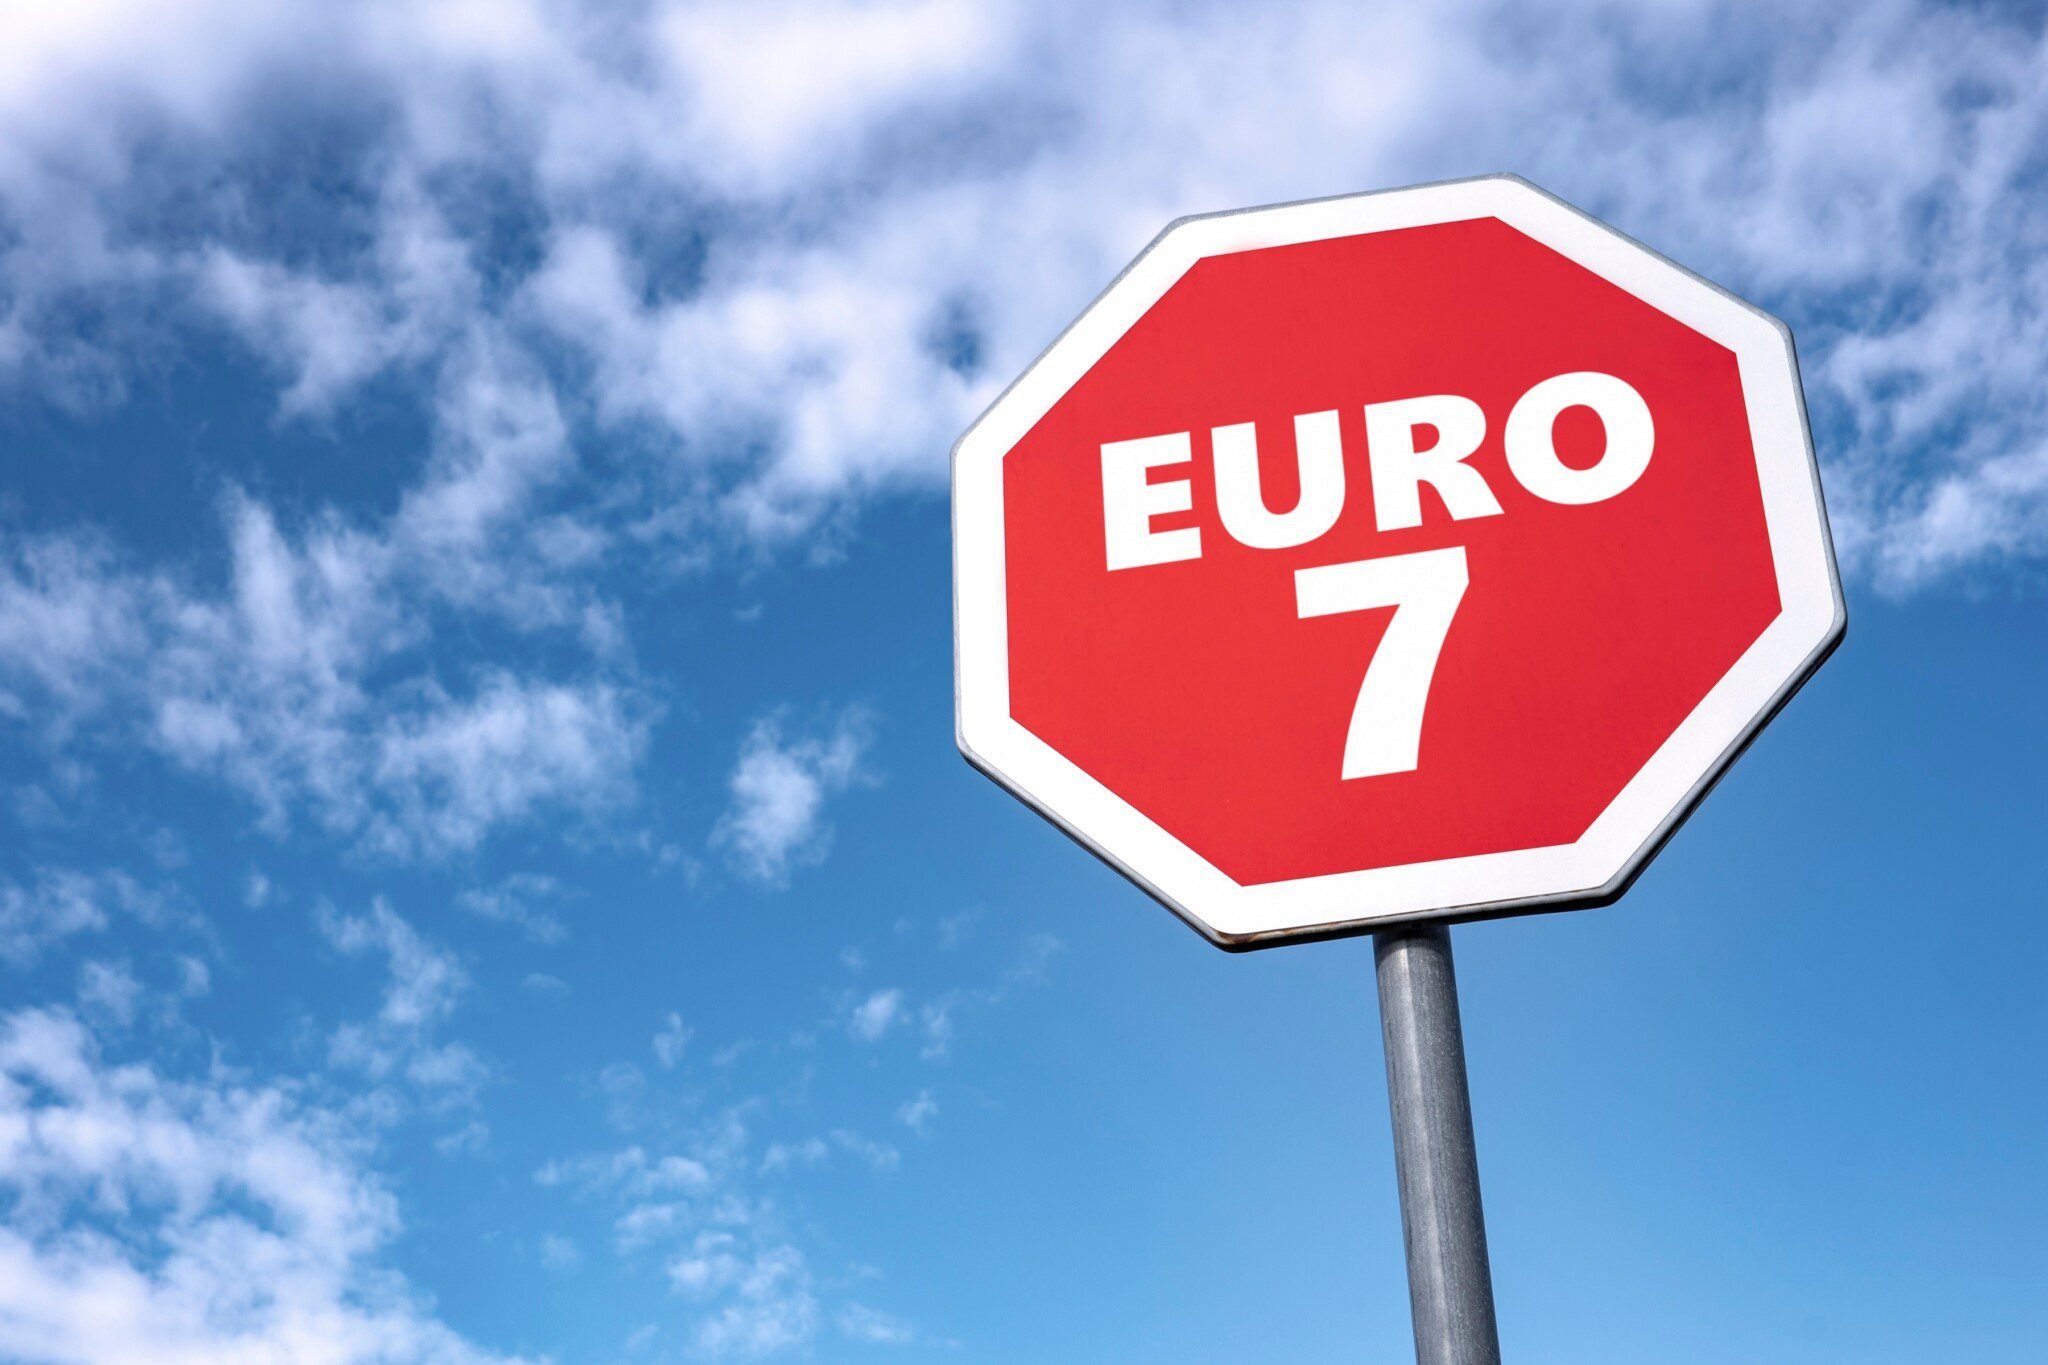 euro7 restriccion normativa